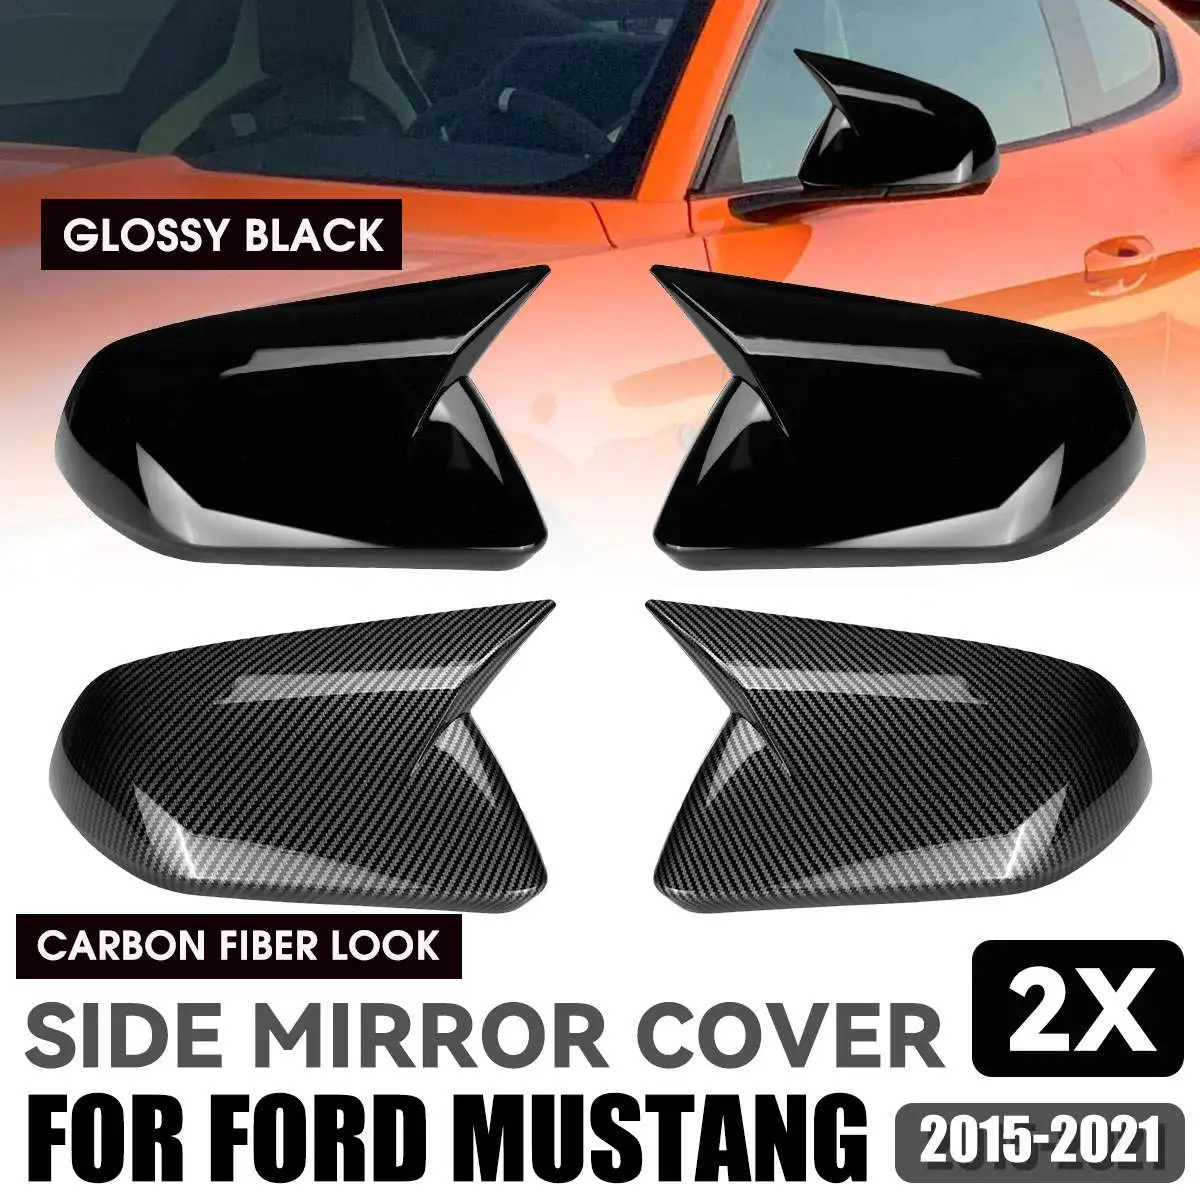 

Колпачки для боковых зеркал заднего вида для Ford Mustang 2015 2016 2017 2018 2019 2020 2021, глянцевые черные из углеродного волокна, 2 шт.